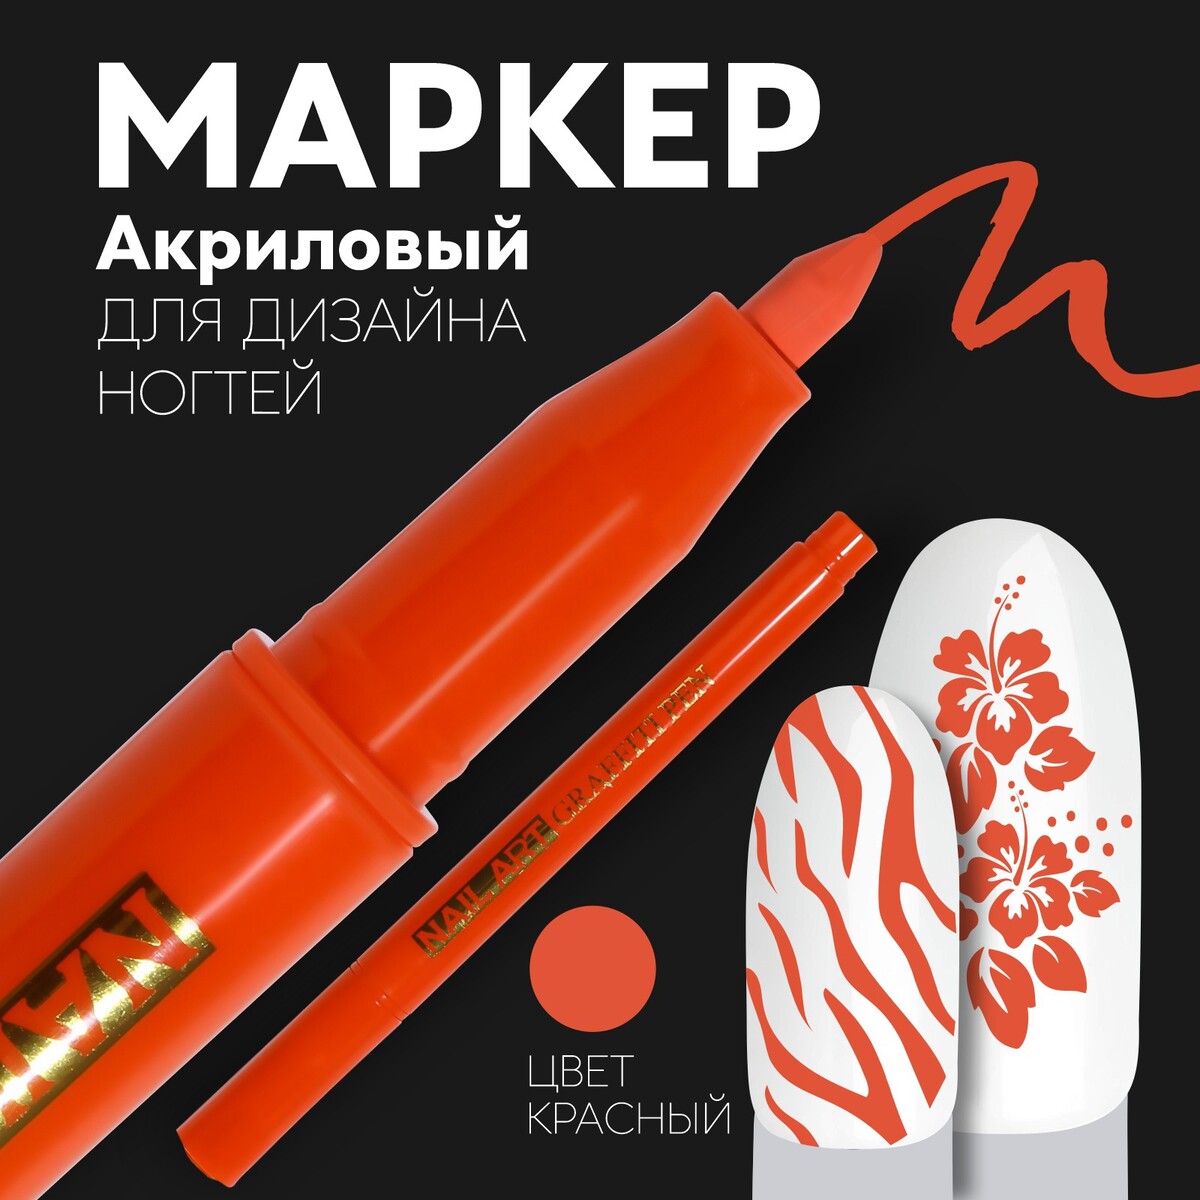 Маркер для дизайна ногтей, акриловый, 13,5 см, цвет красный успех через провал парадокс дизайна